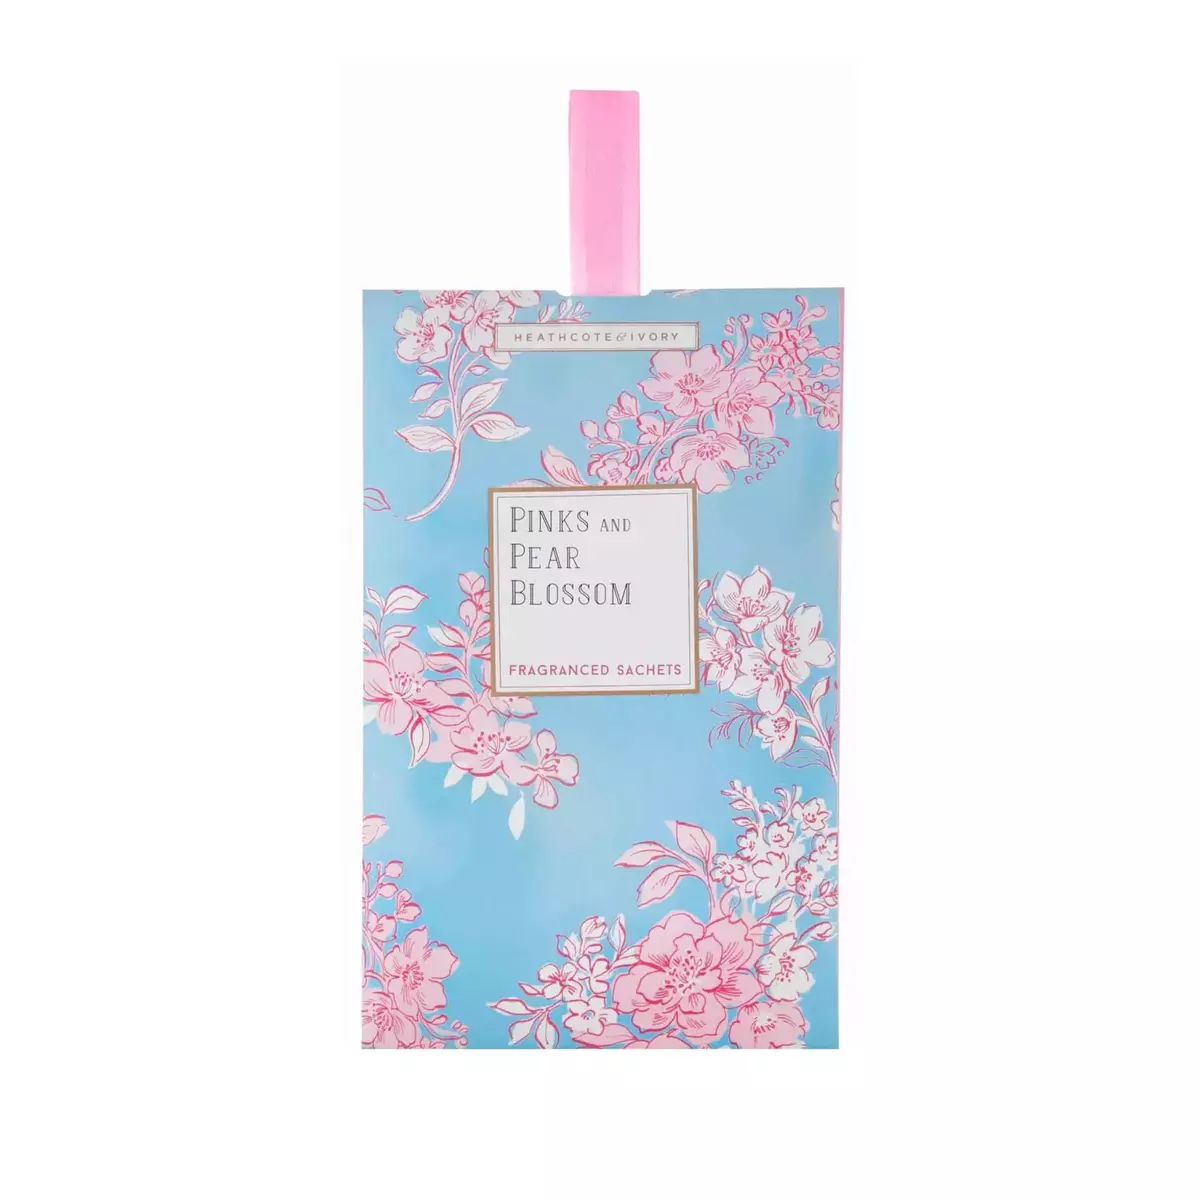 Pinks & Pear Blossom - Fragranced Sachet - image 1